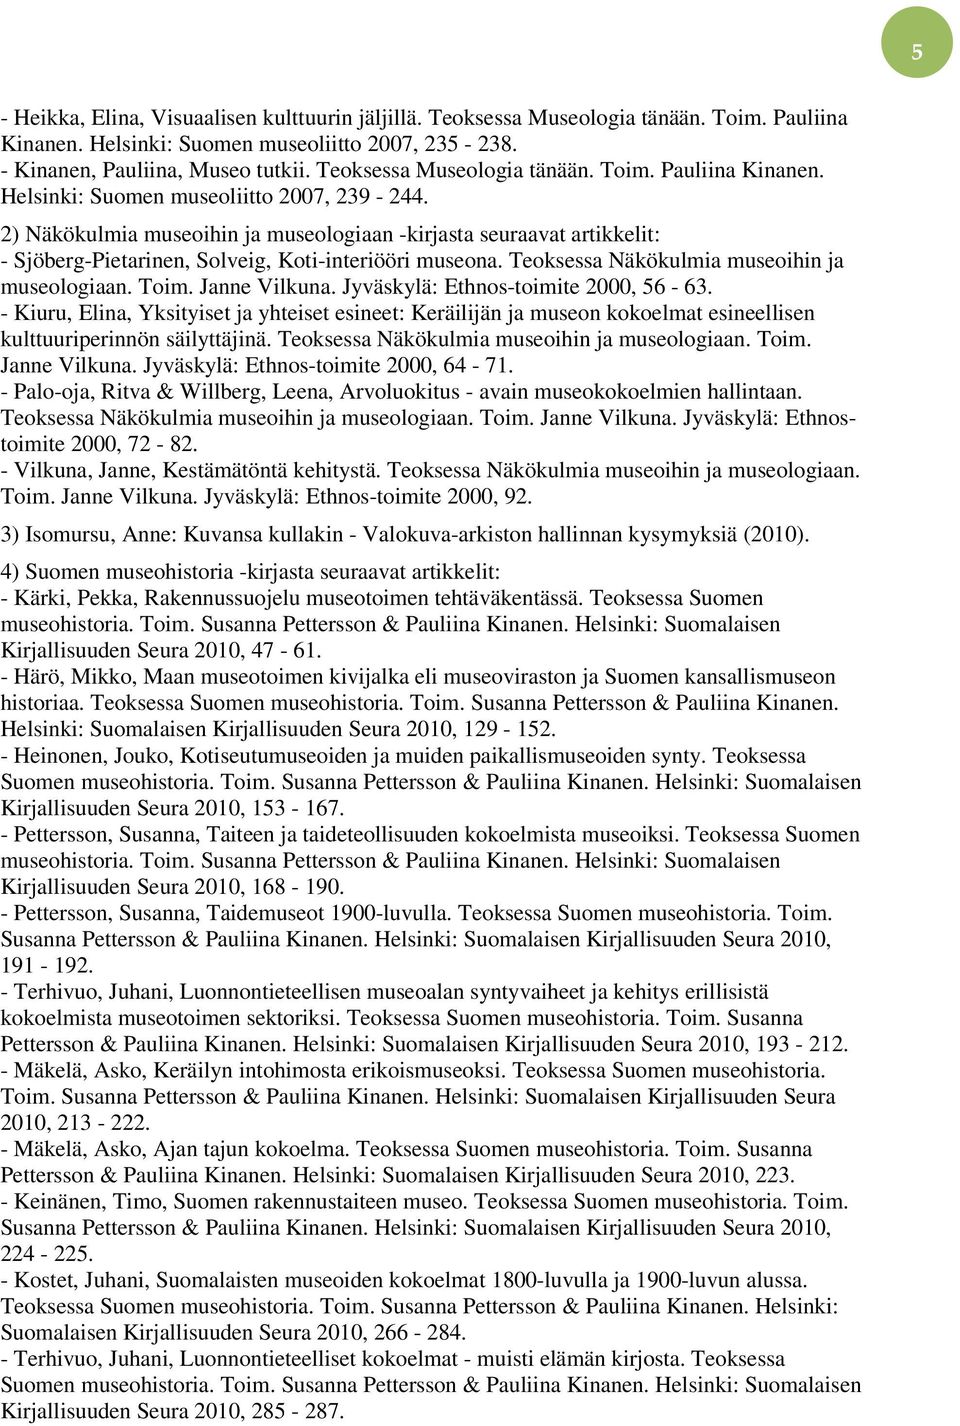 2) Näkökulmia museoihin ja museologiaan -kirjasta seuraavat artikkelit: - Sjöberg-Pietarinen, Solveig, Koti-interiööri museona. Teoksessa Näkökulmia museoihin ja museologiaan. Toim. Janne Vilkuna.